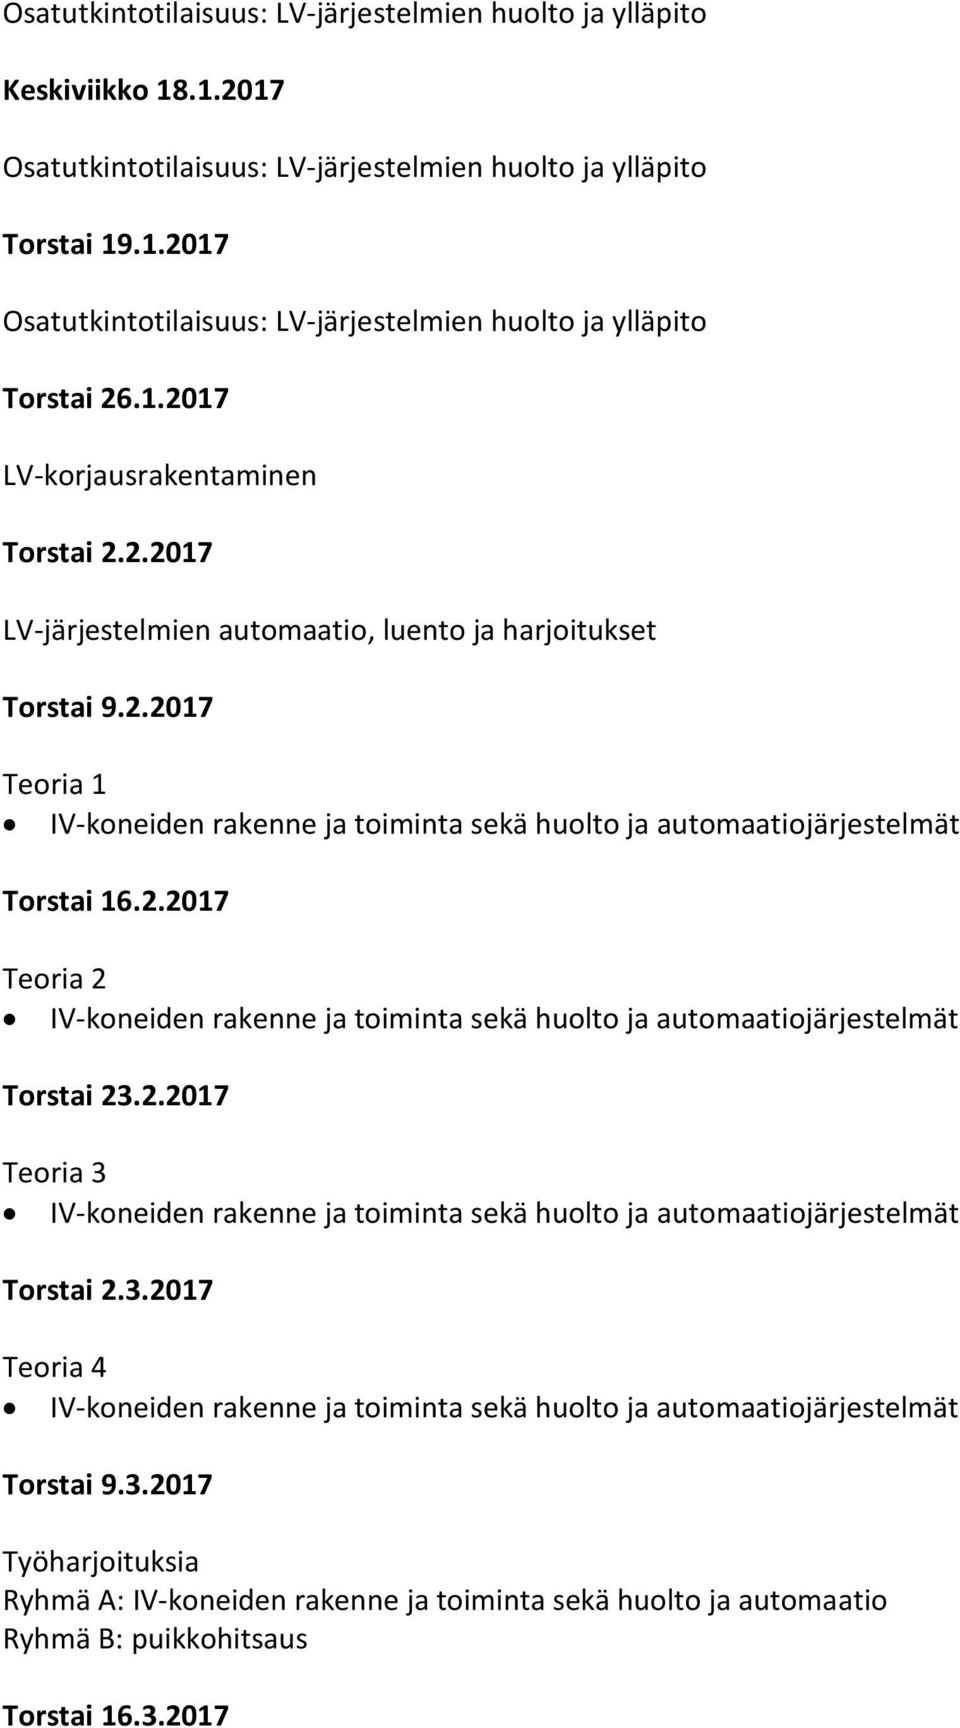 1.2017 LV-korjausrakentaminen Torstai 2.2.2017 LV-järjestelmien automaatio, luento ja harjoitukset Torstai 9.2.2017 Teoria 1 Torstai 16.